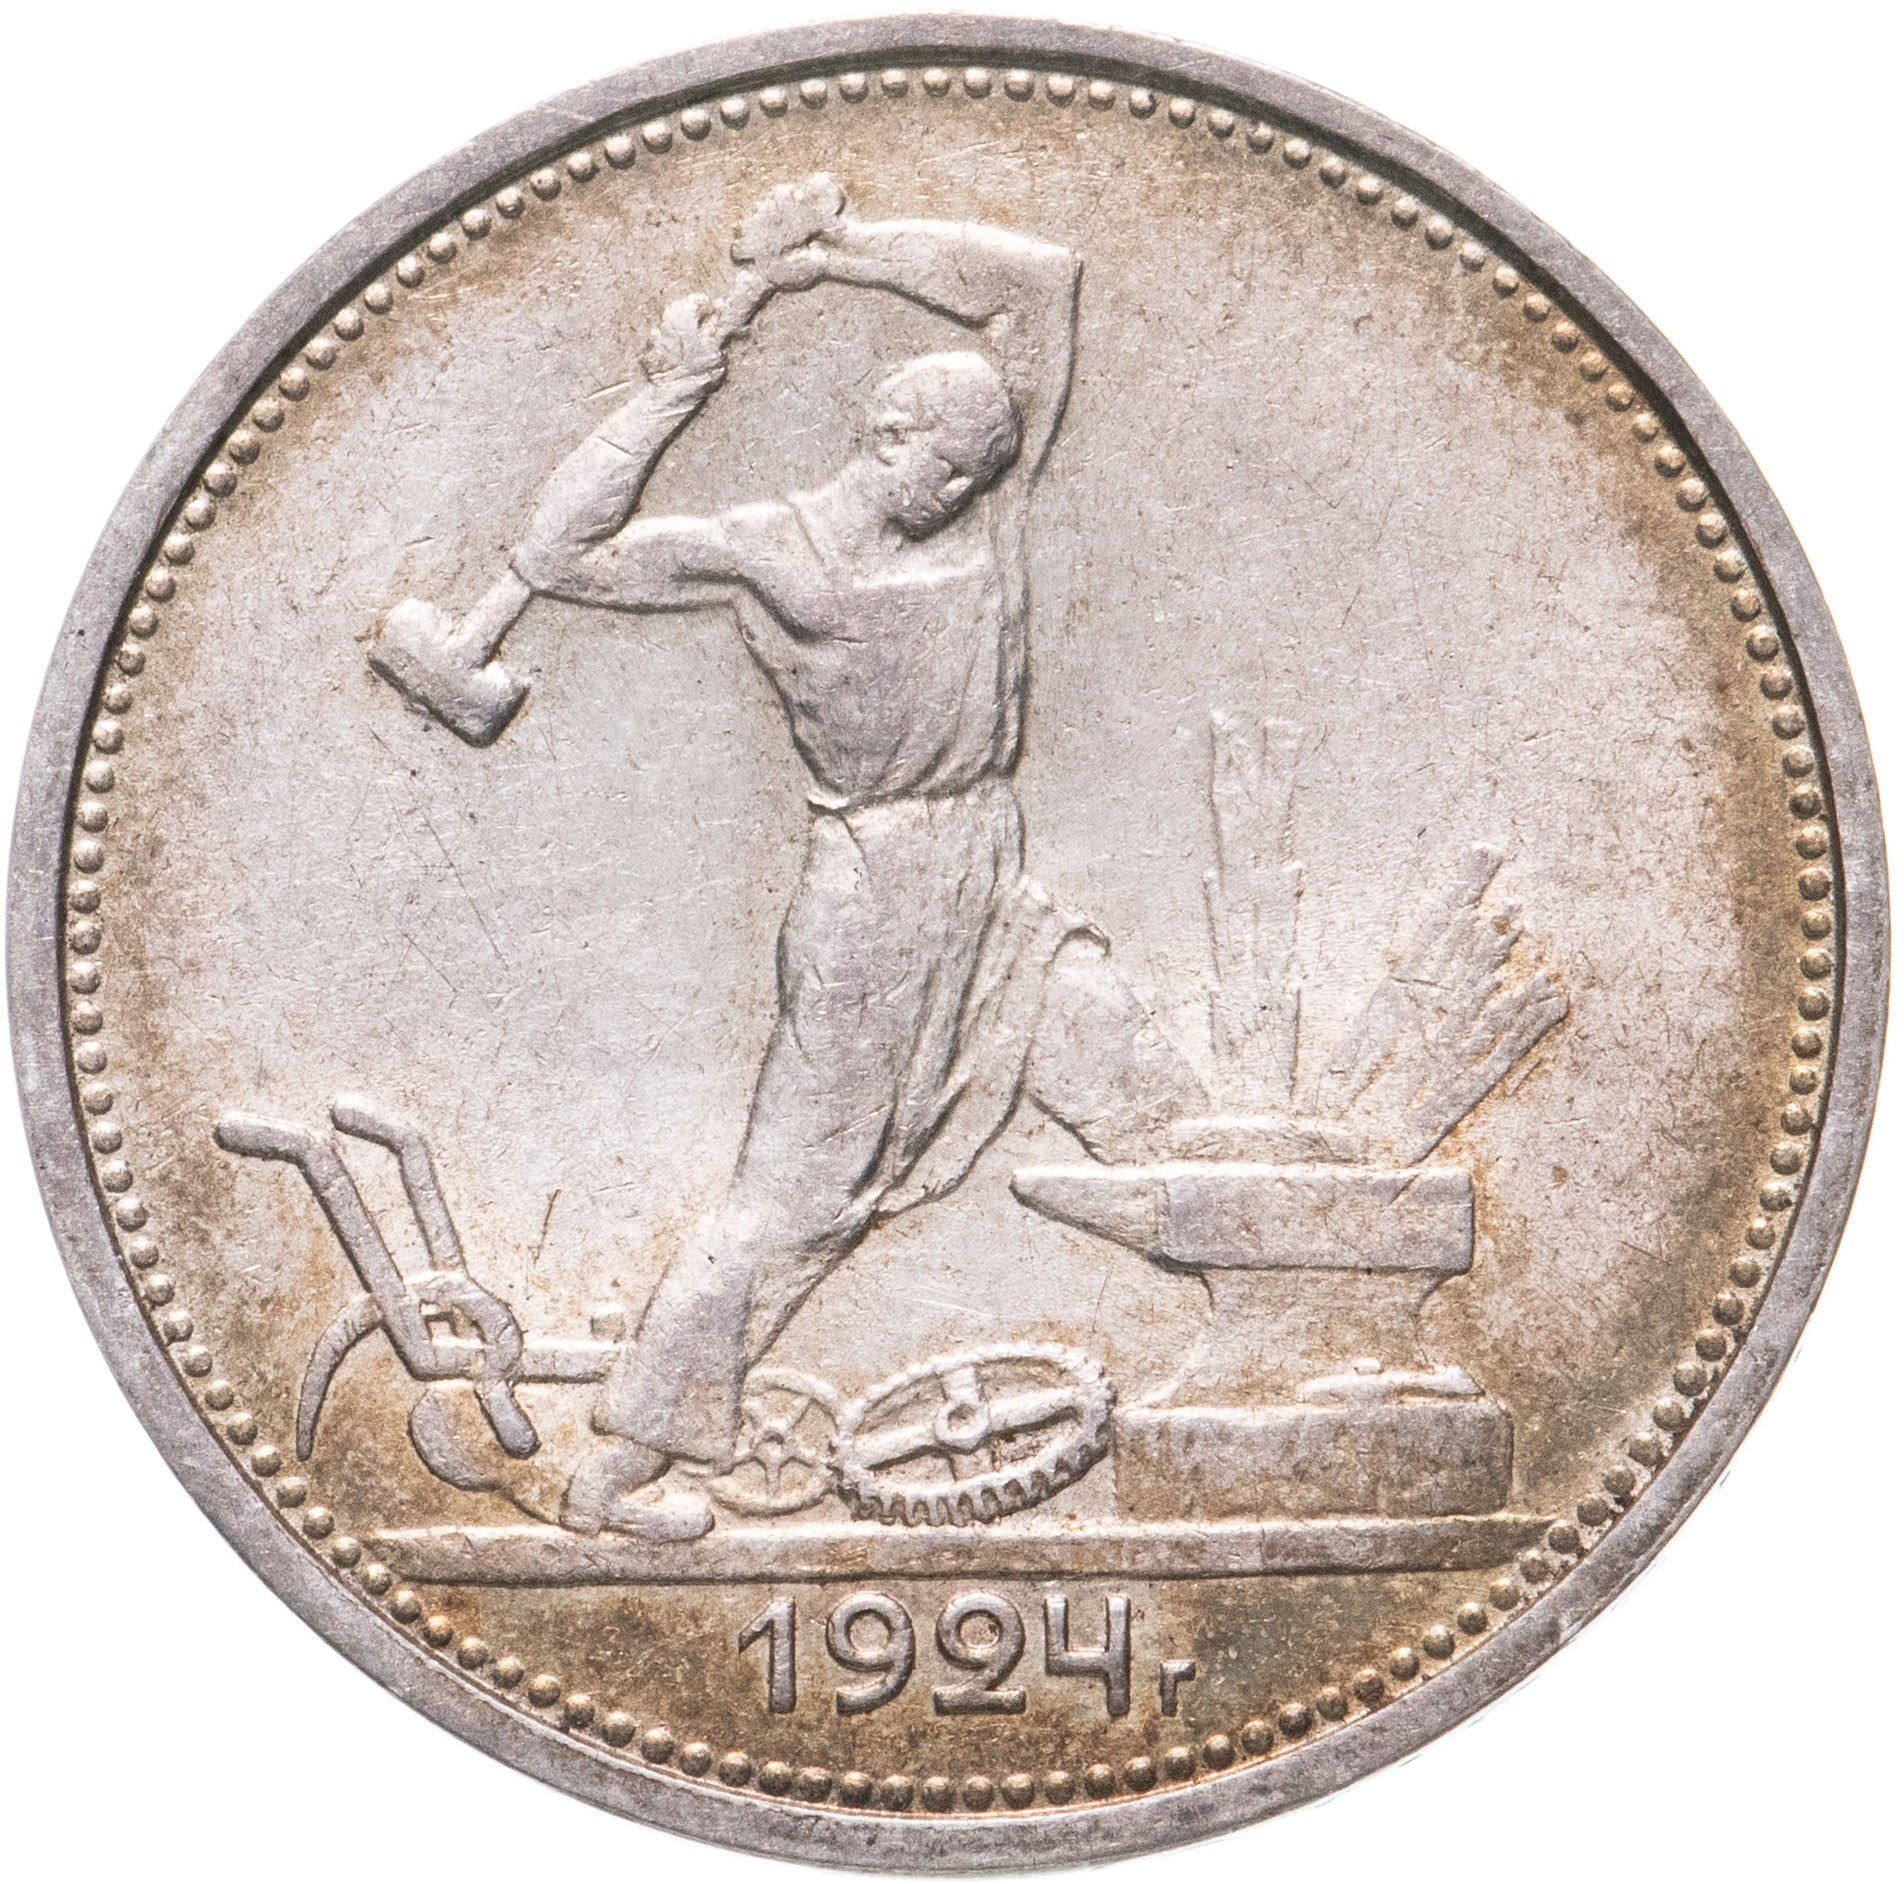 Серебряная монета полтинник 1924 года. Монета 1926 один полтинник. Один полтинник 1924 серебро. Монета серебряный полтинник 1924г. Монета полтинник 1925.